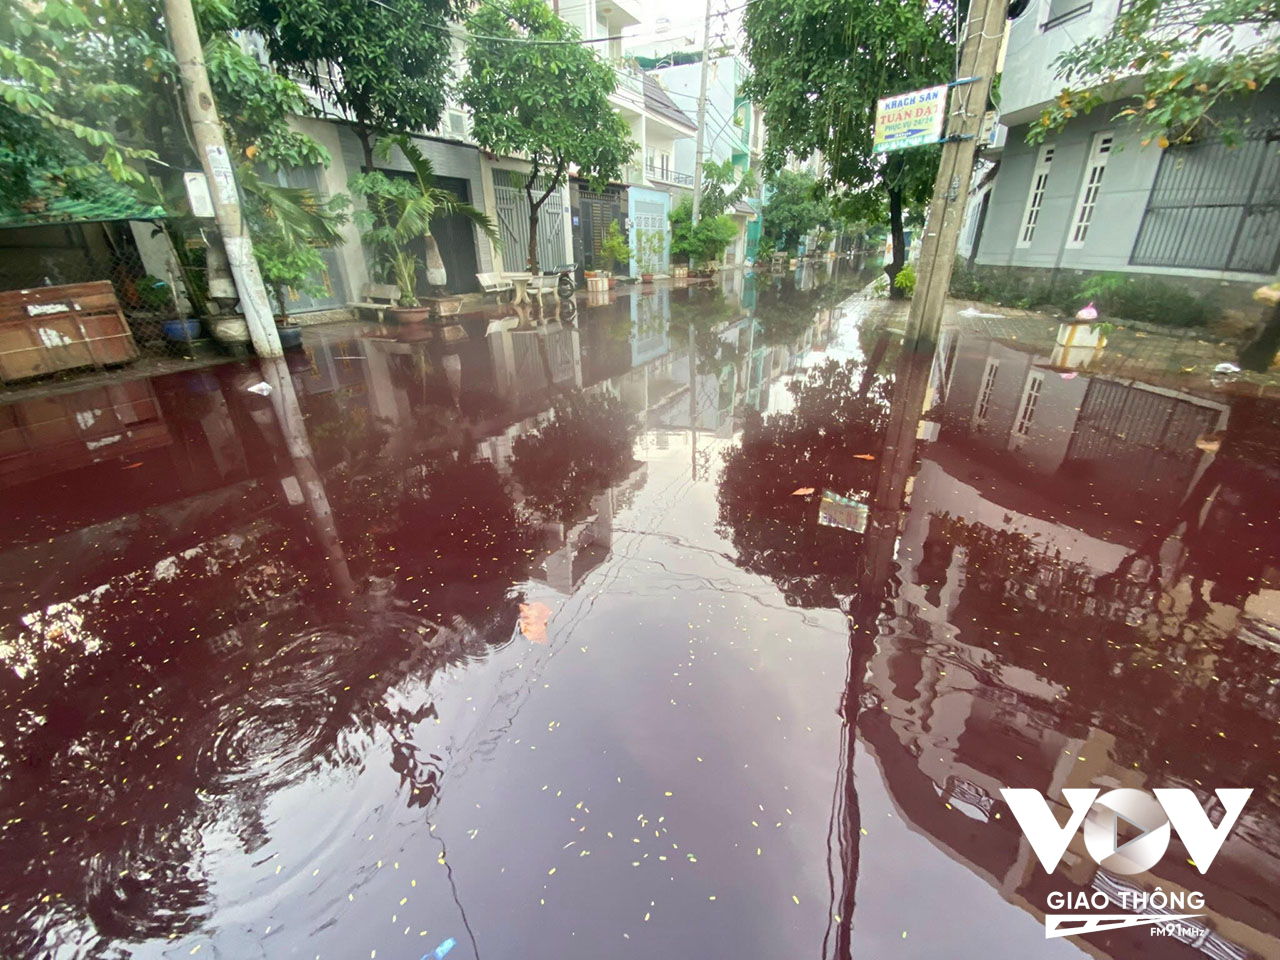 Chiều nay (23/10),cơn mưa như trút nước, nhiều tuyến đường trên địa bàn TP.HCM ngập sâu. Đặc biệt, khu vực đường Phan Anh – Tô Hiệu và nhiều tuyến hẻm (nối quận Tân Phú và Bình Tân) xuất hiện màu nước lạ bất thường.